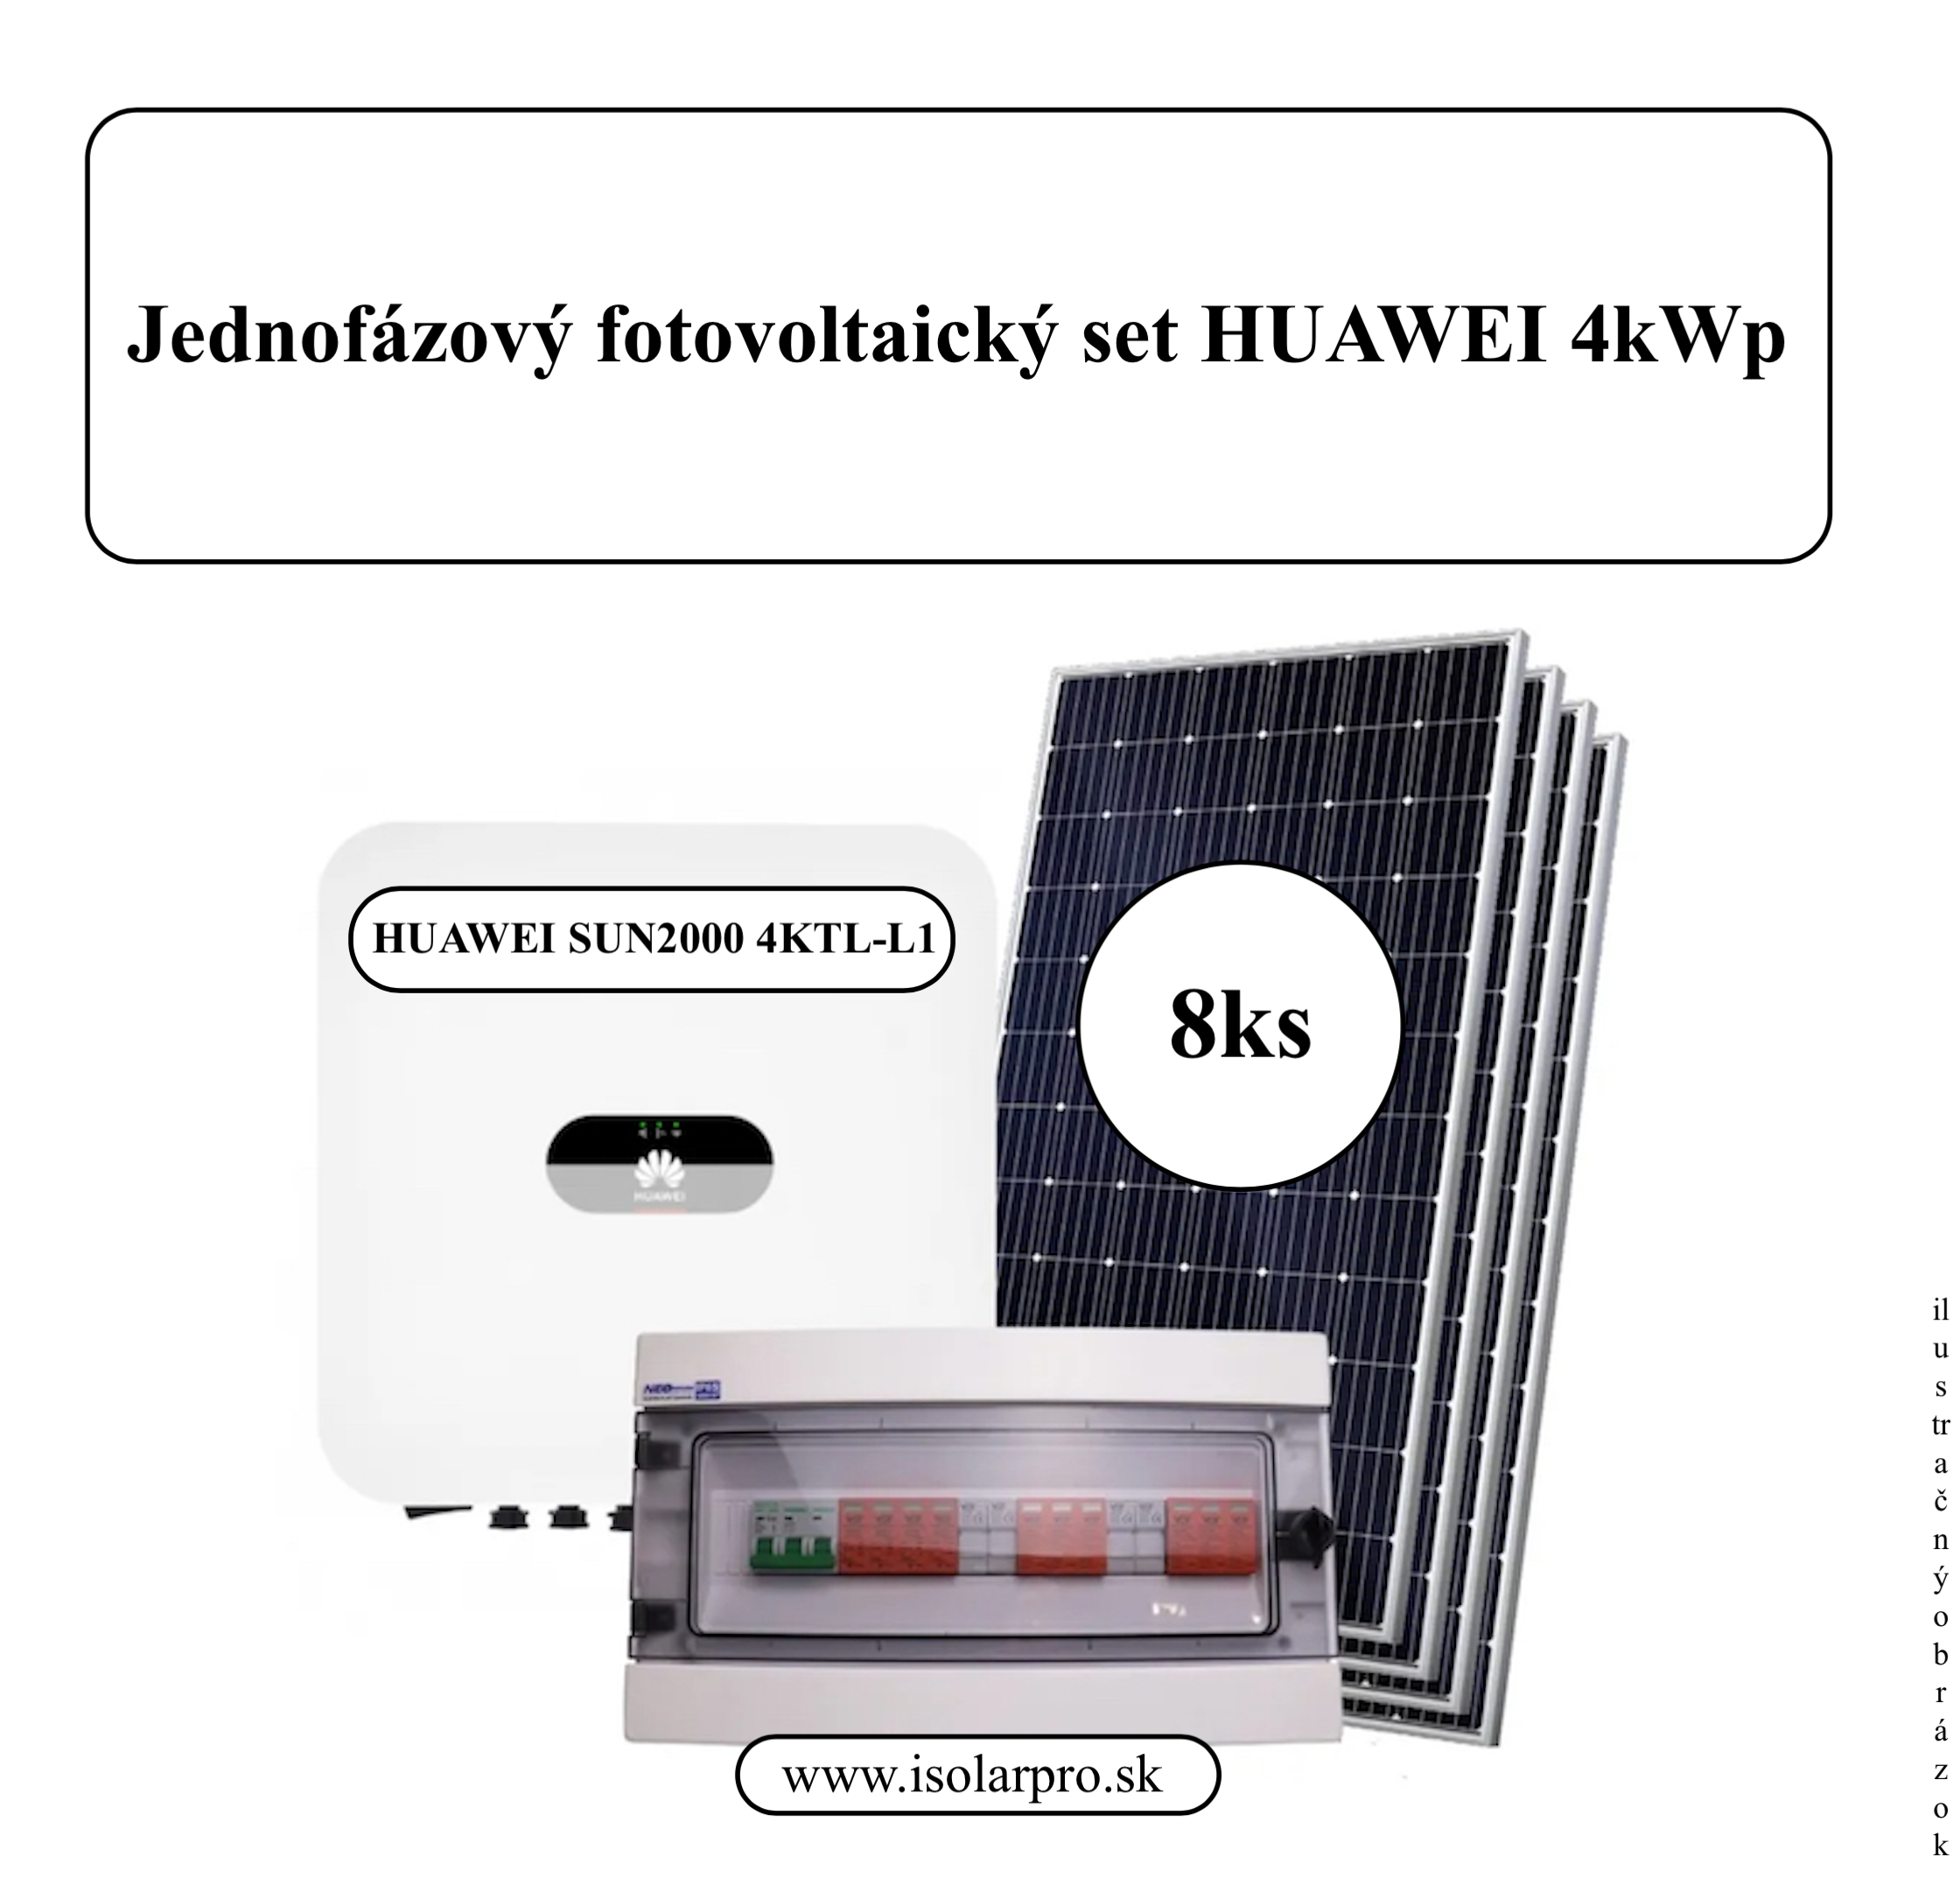 4,1kWp Jednofázový fotovoltický set, On-grid Huawei